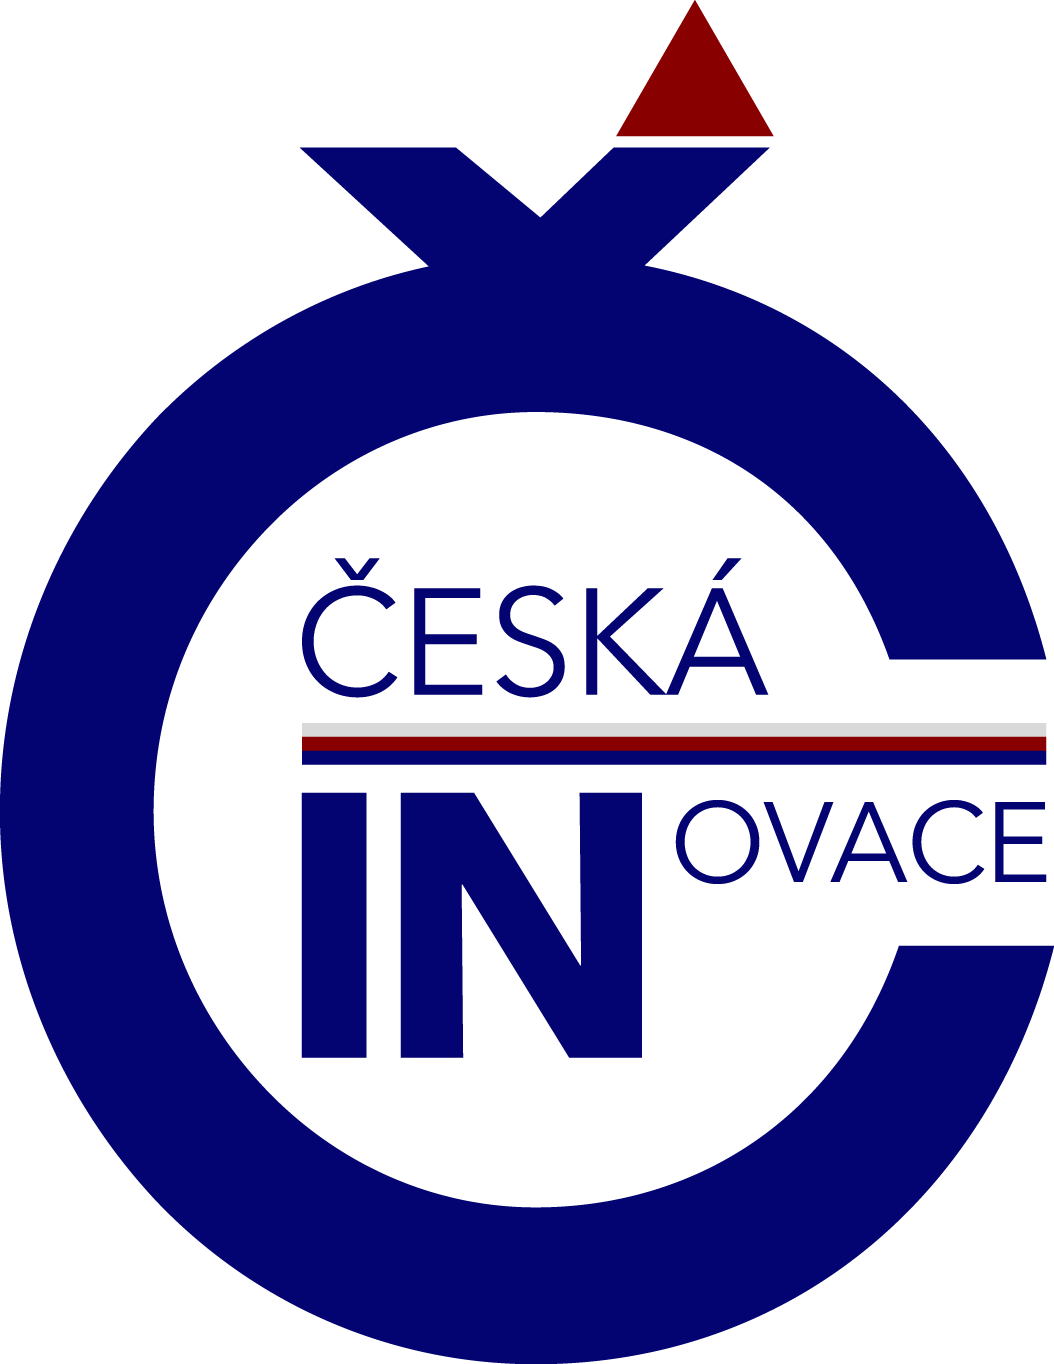 Česká inovace